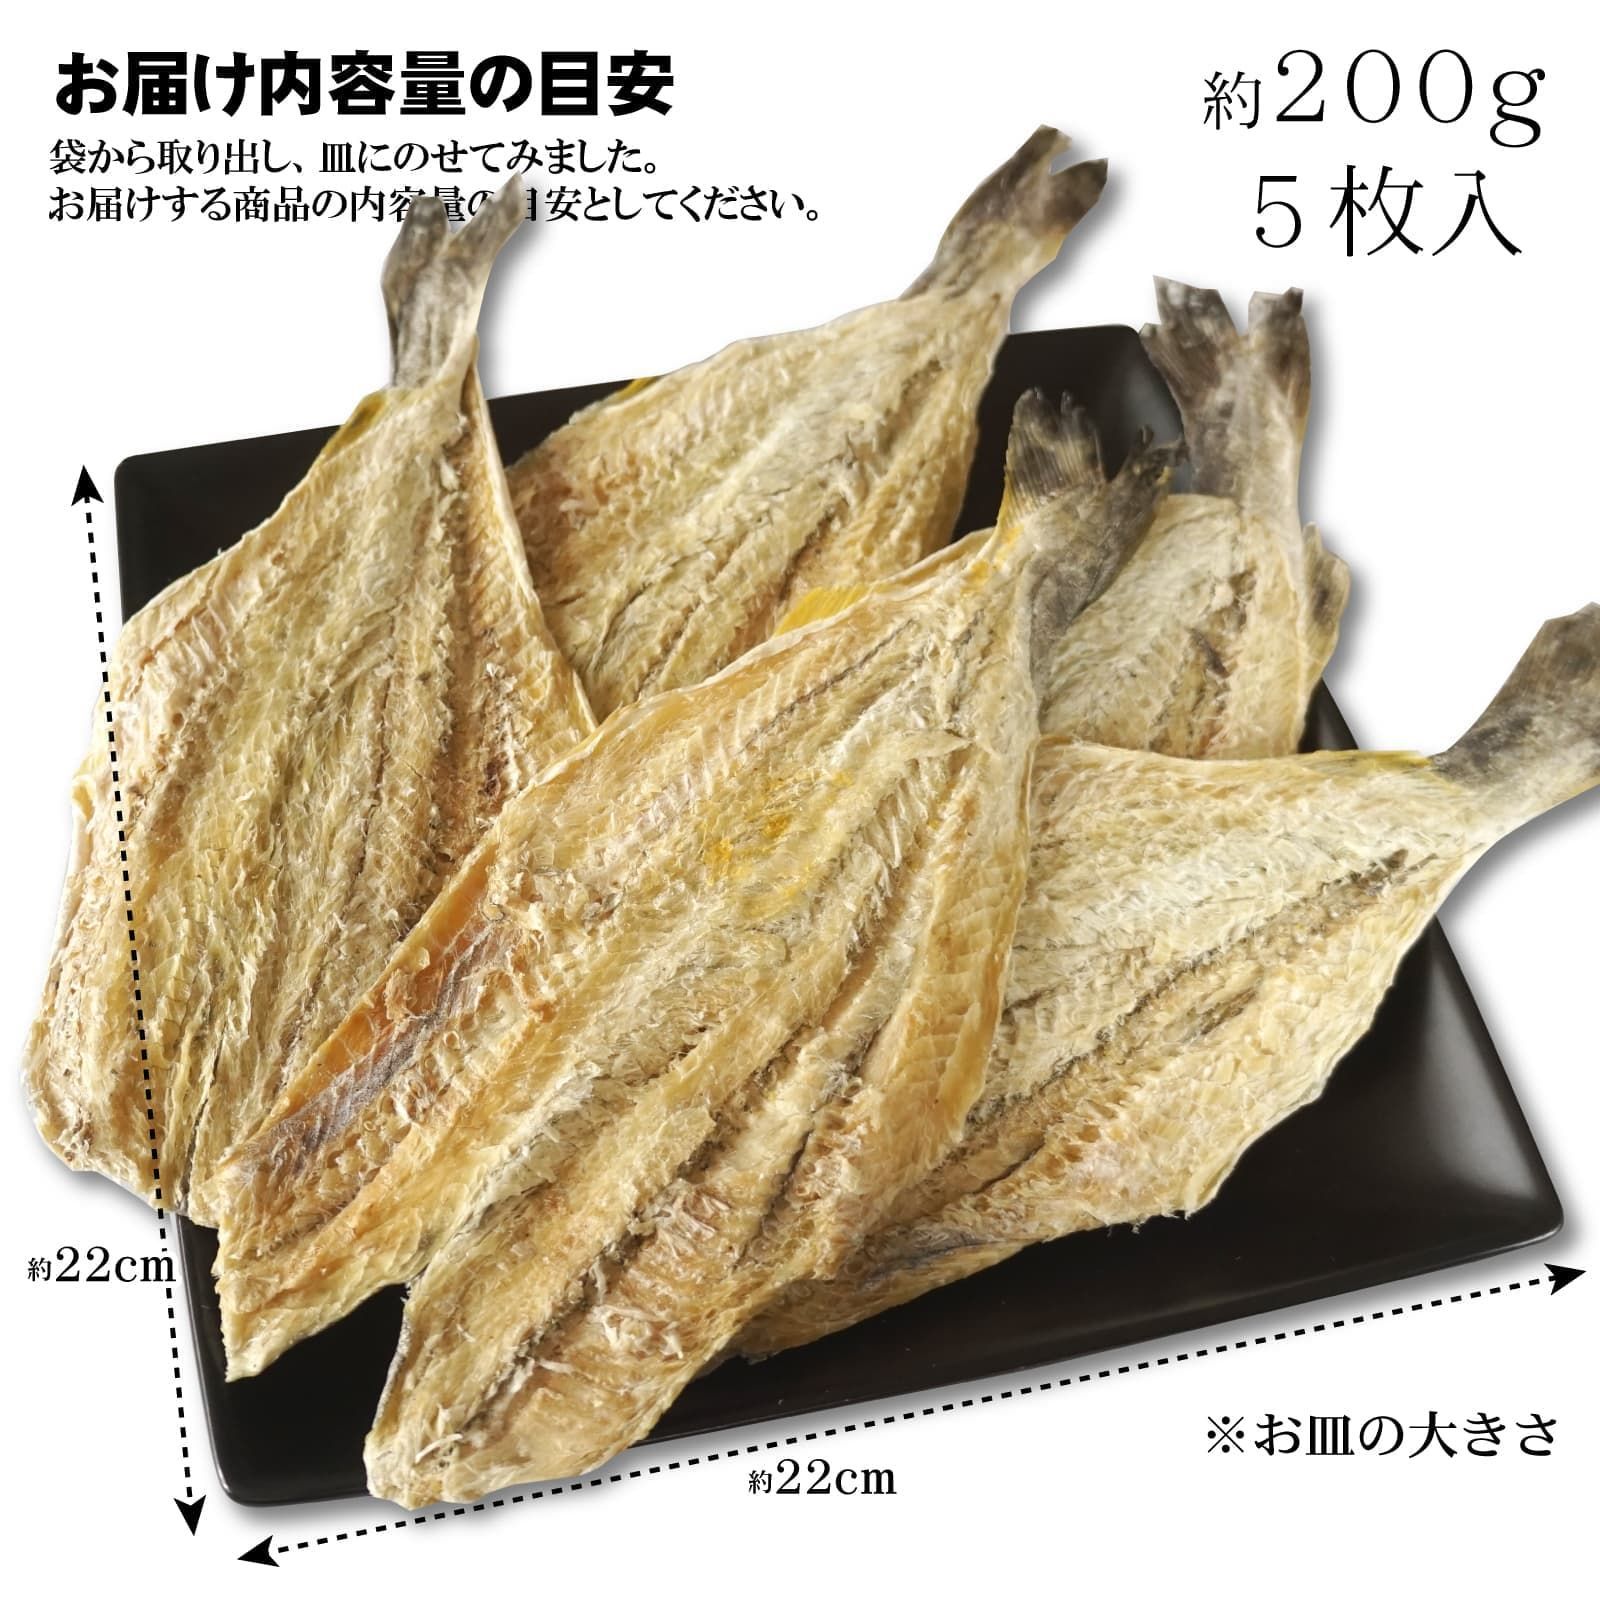 10袋 大東食品 カンカイ 270g 氷下魚 コマイ - 魚介類(加工食品)